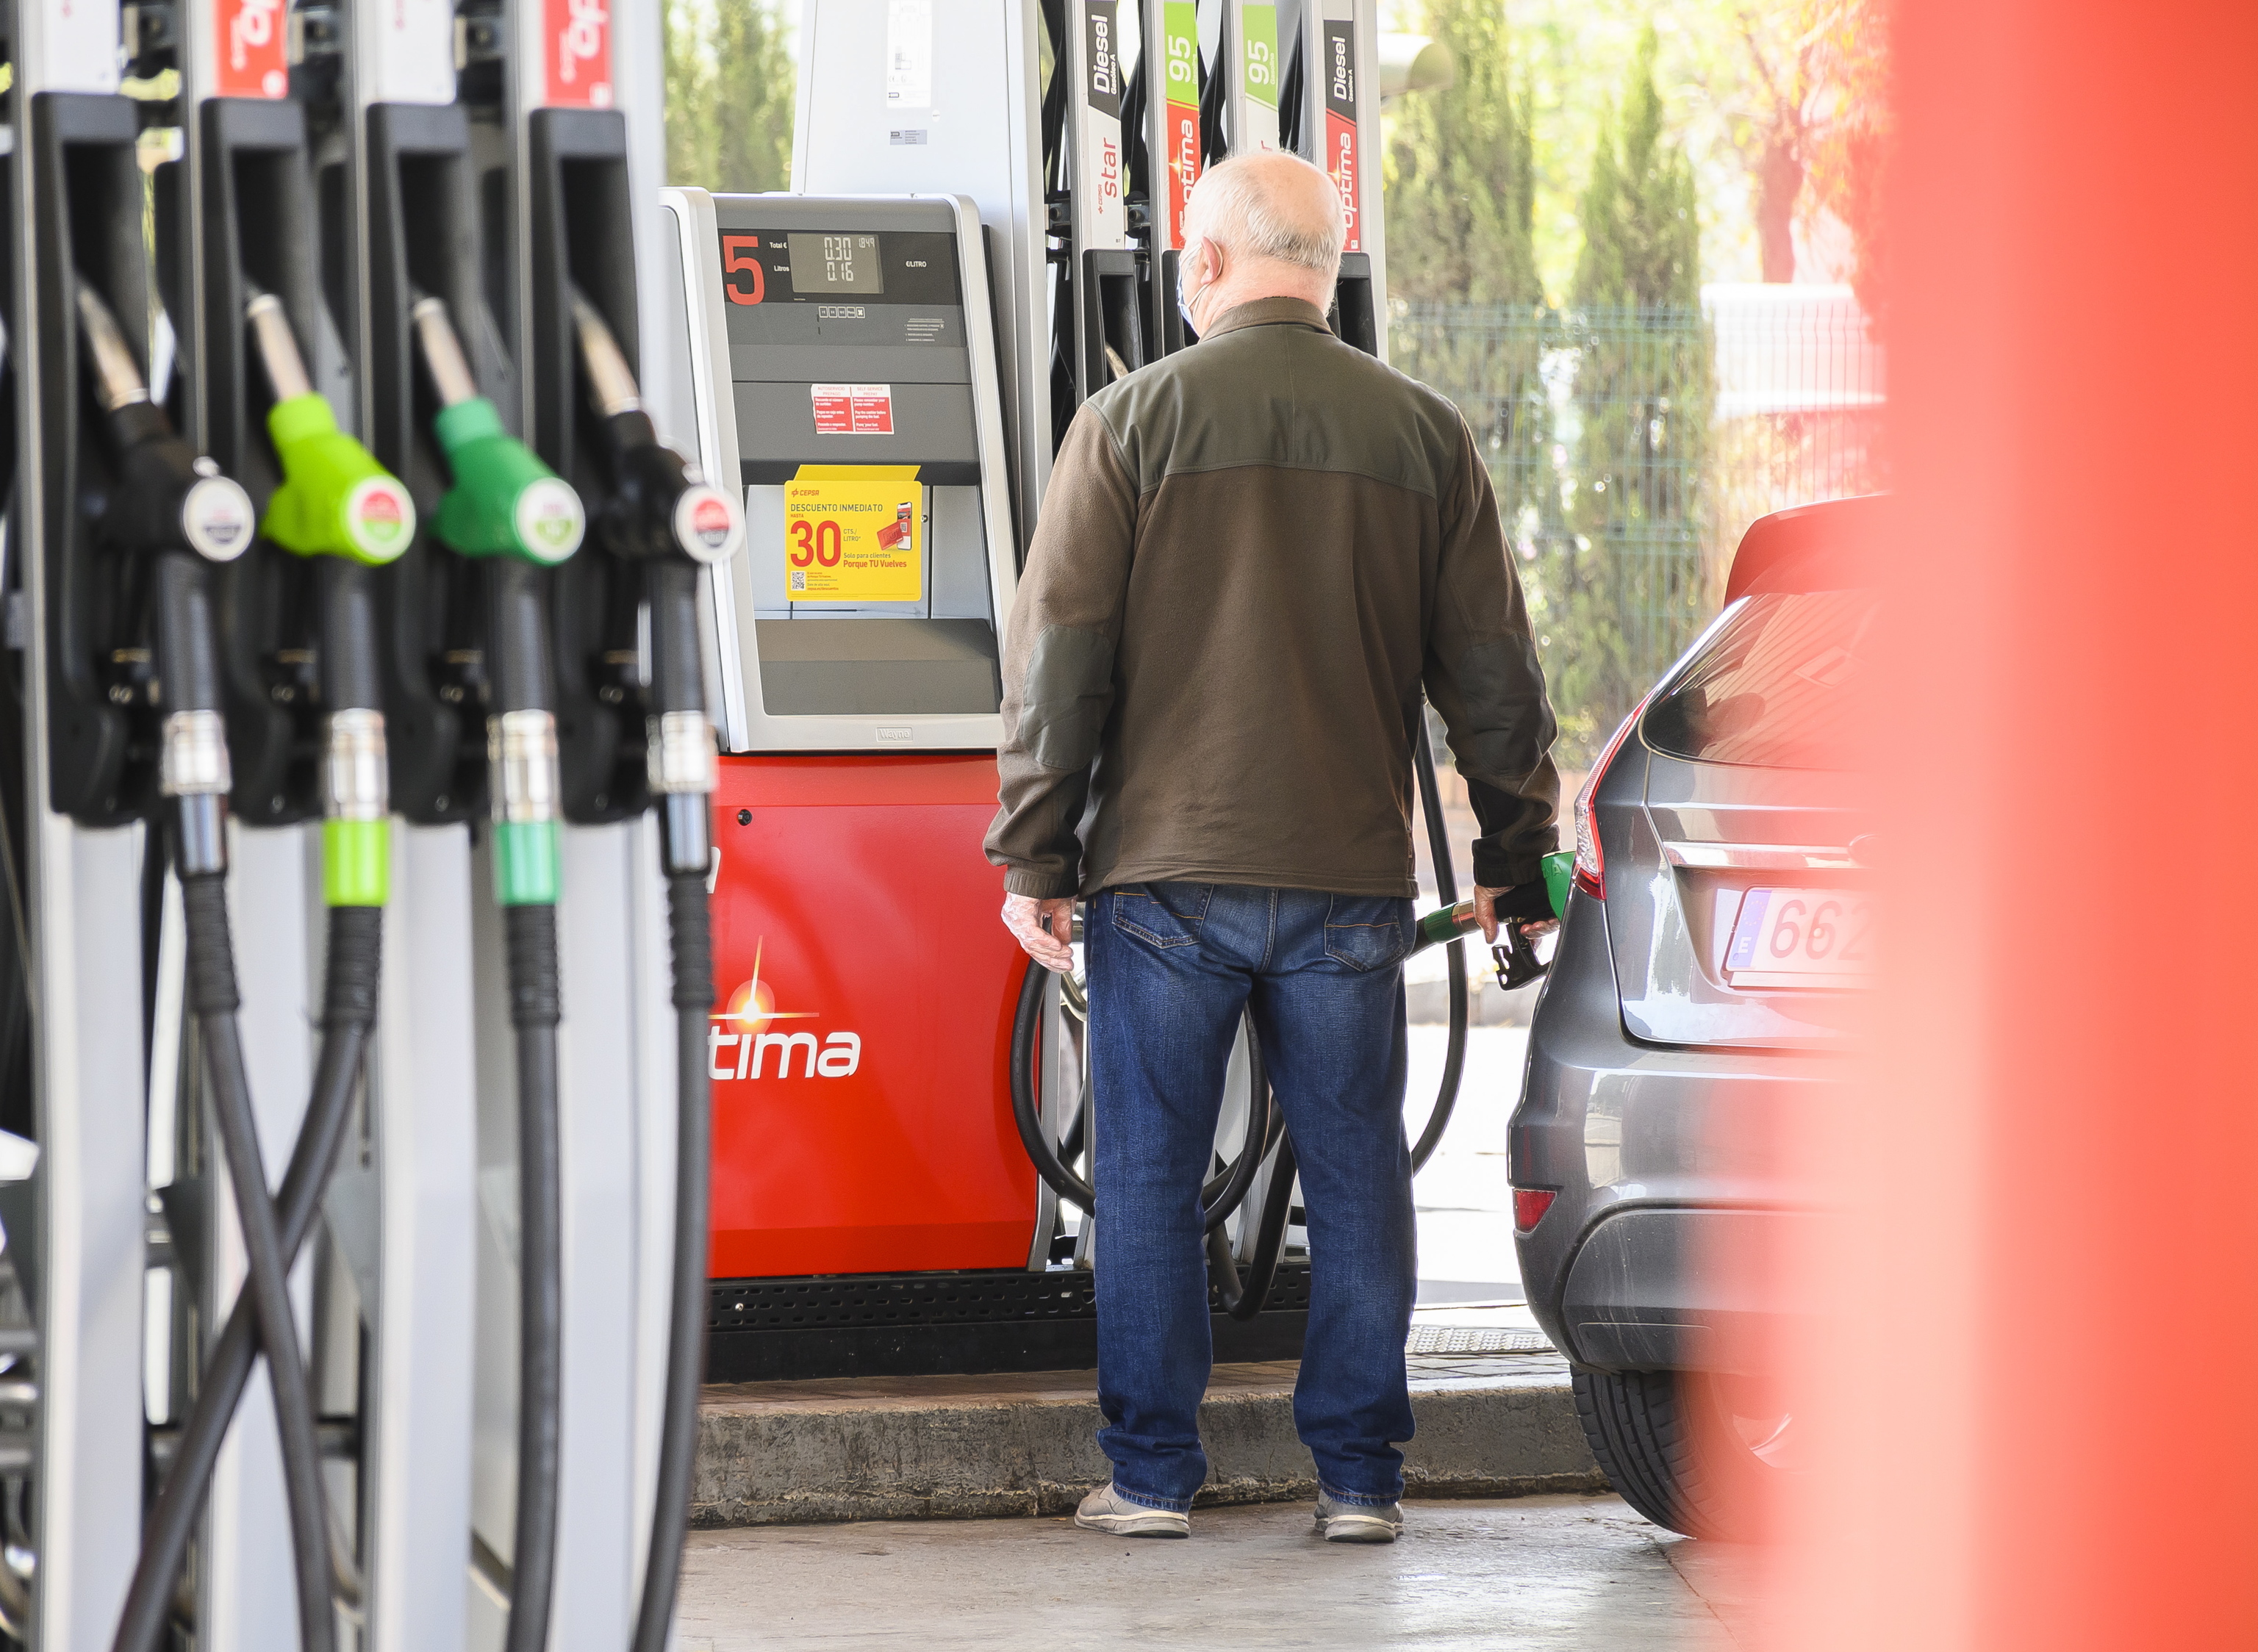 La gasolina y el gasóleo marcan su precio más alto en el último mes